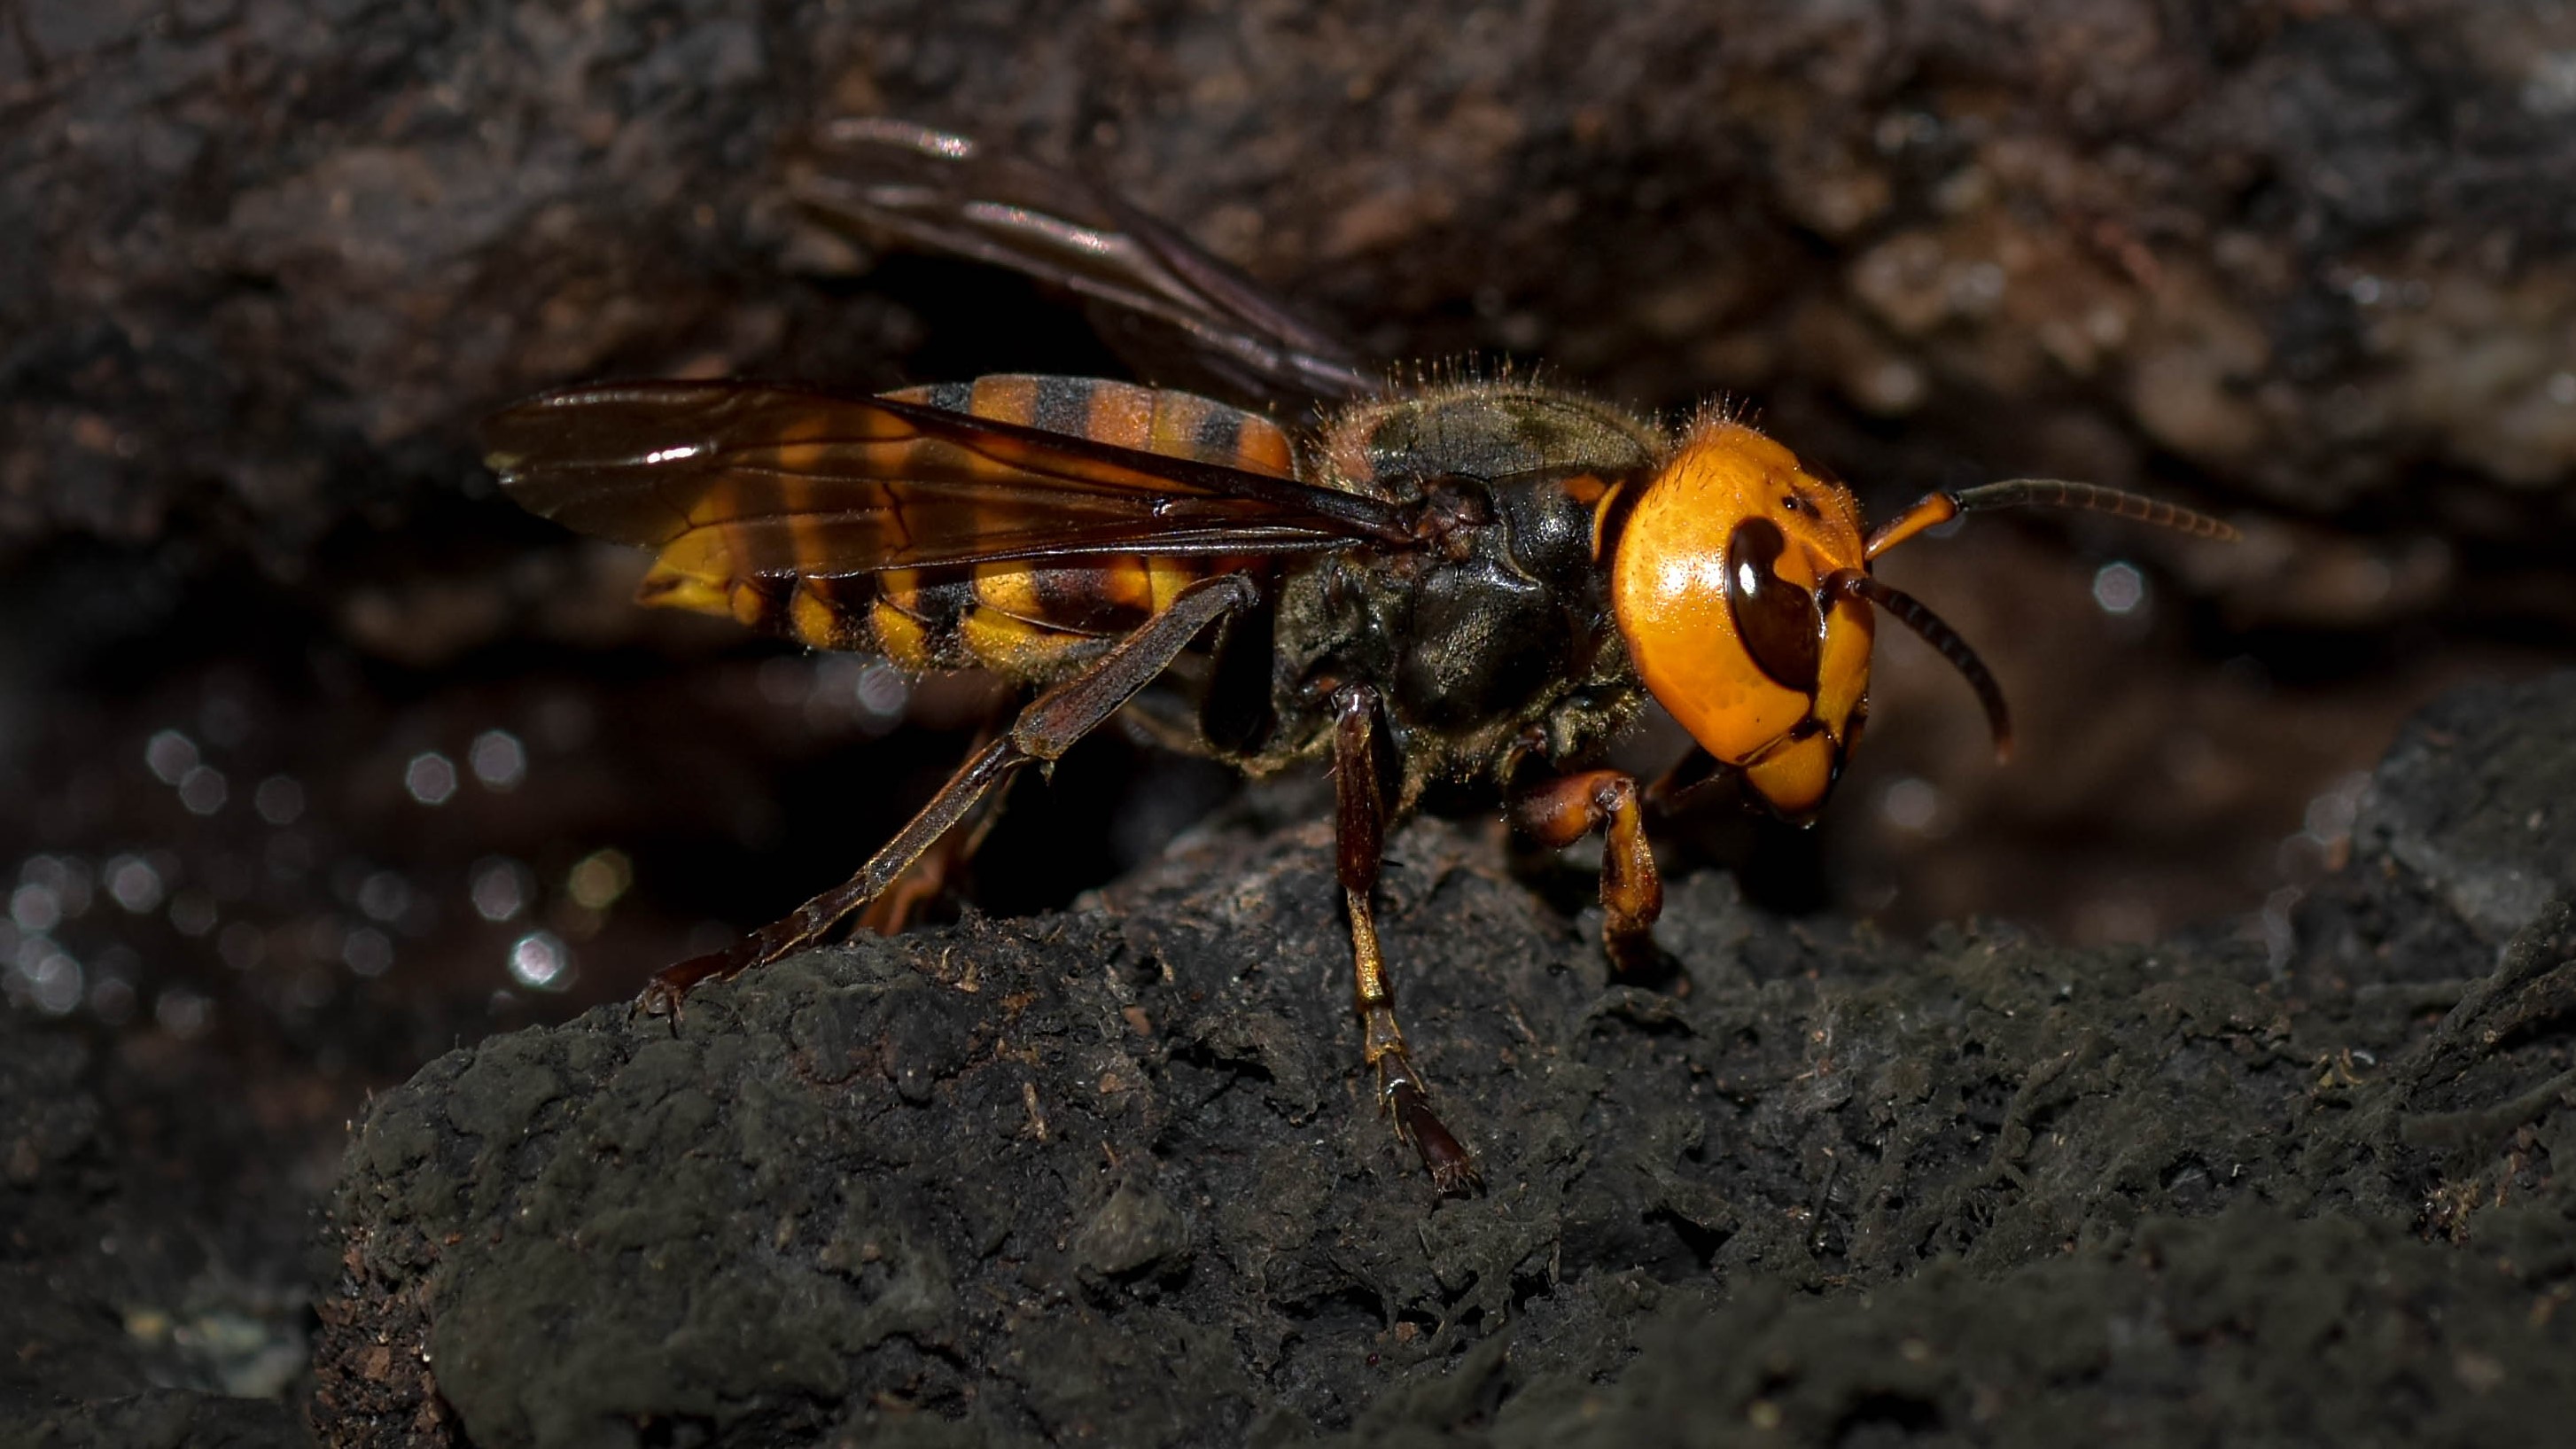 Murder hornet Asian giant hornets invading North America Live Science